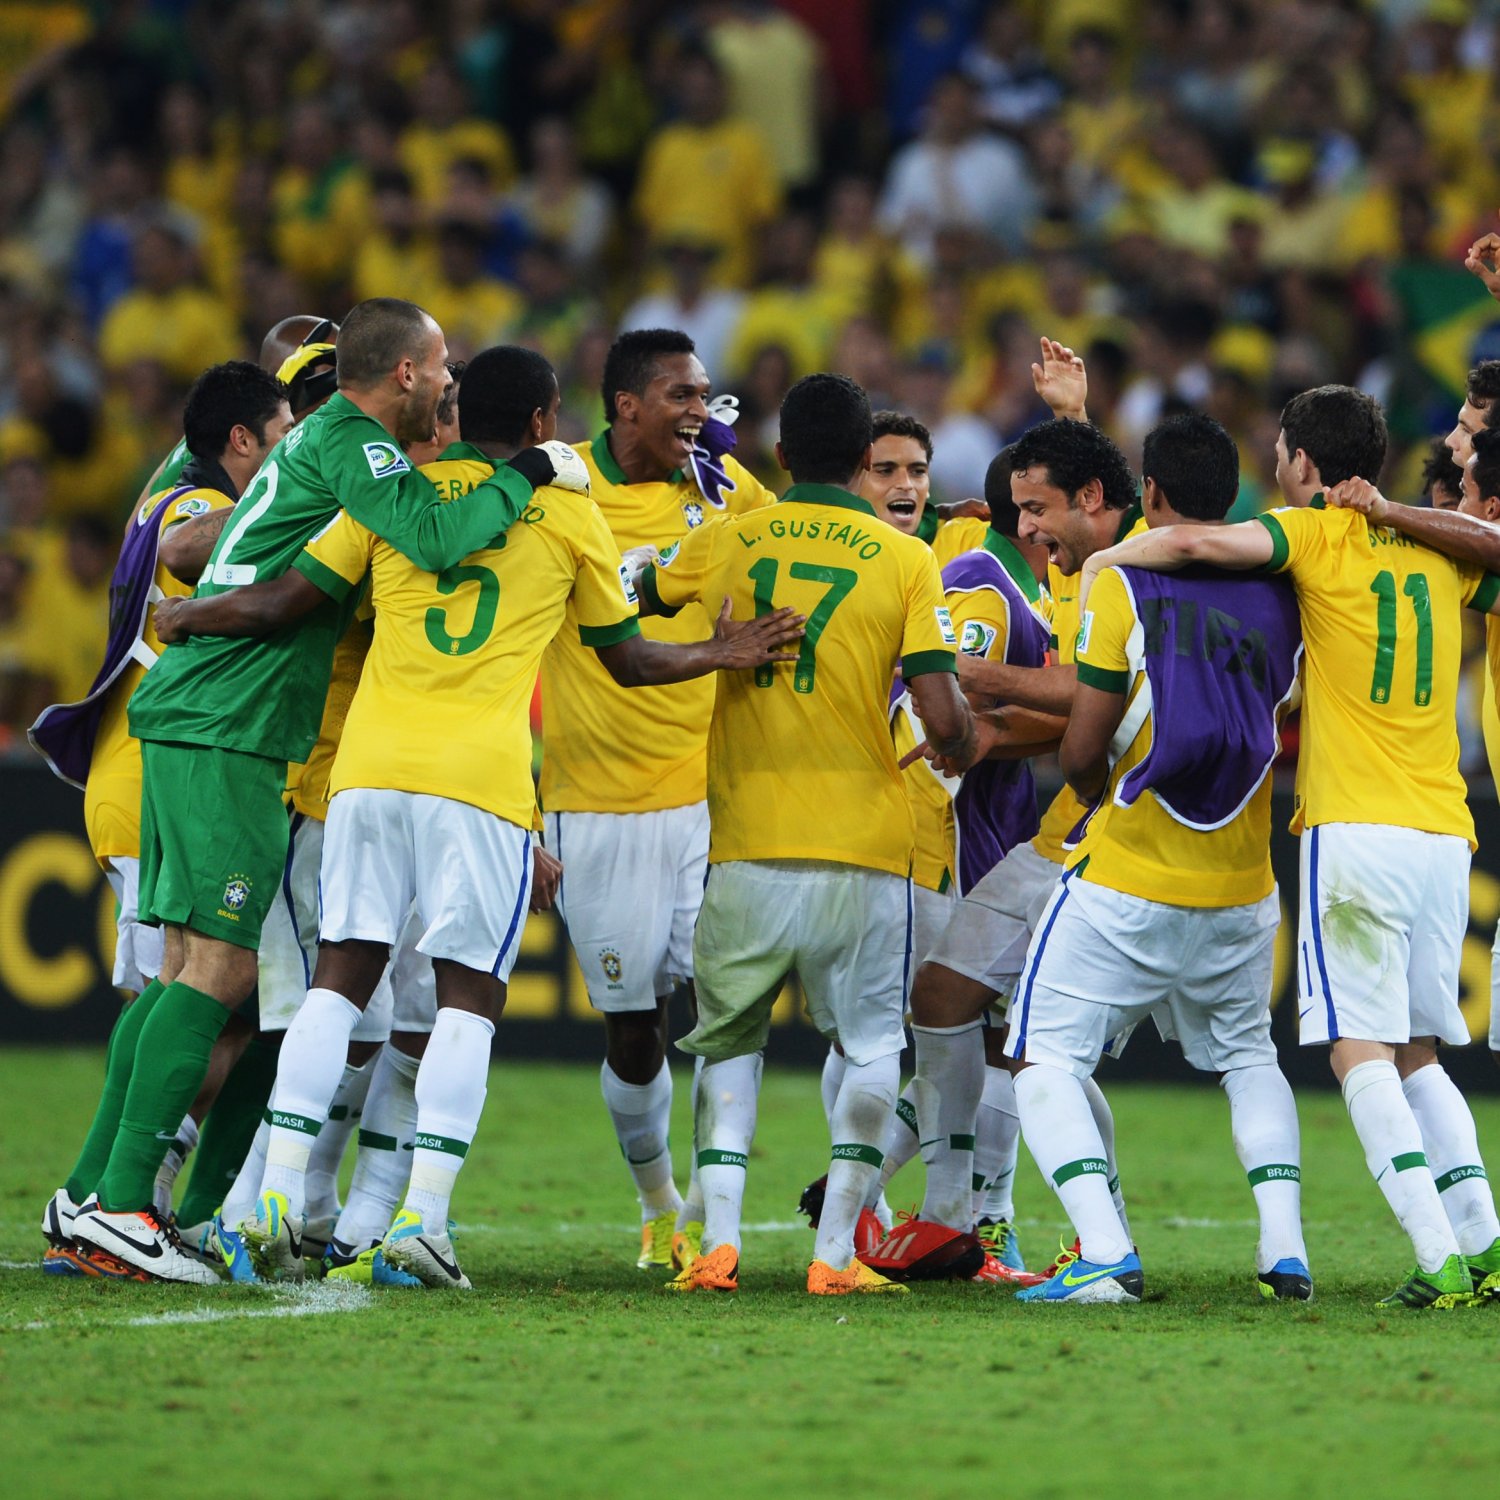 Brazil FIFA 2014 World Cup Team Guide | Bleacher Report
